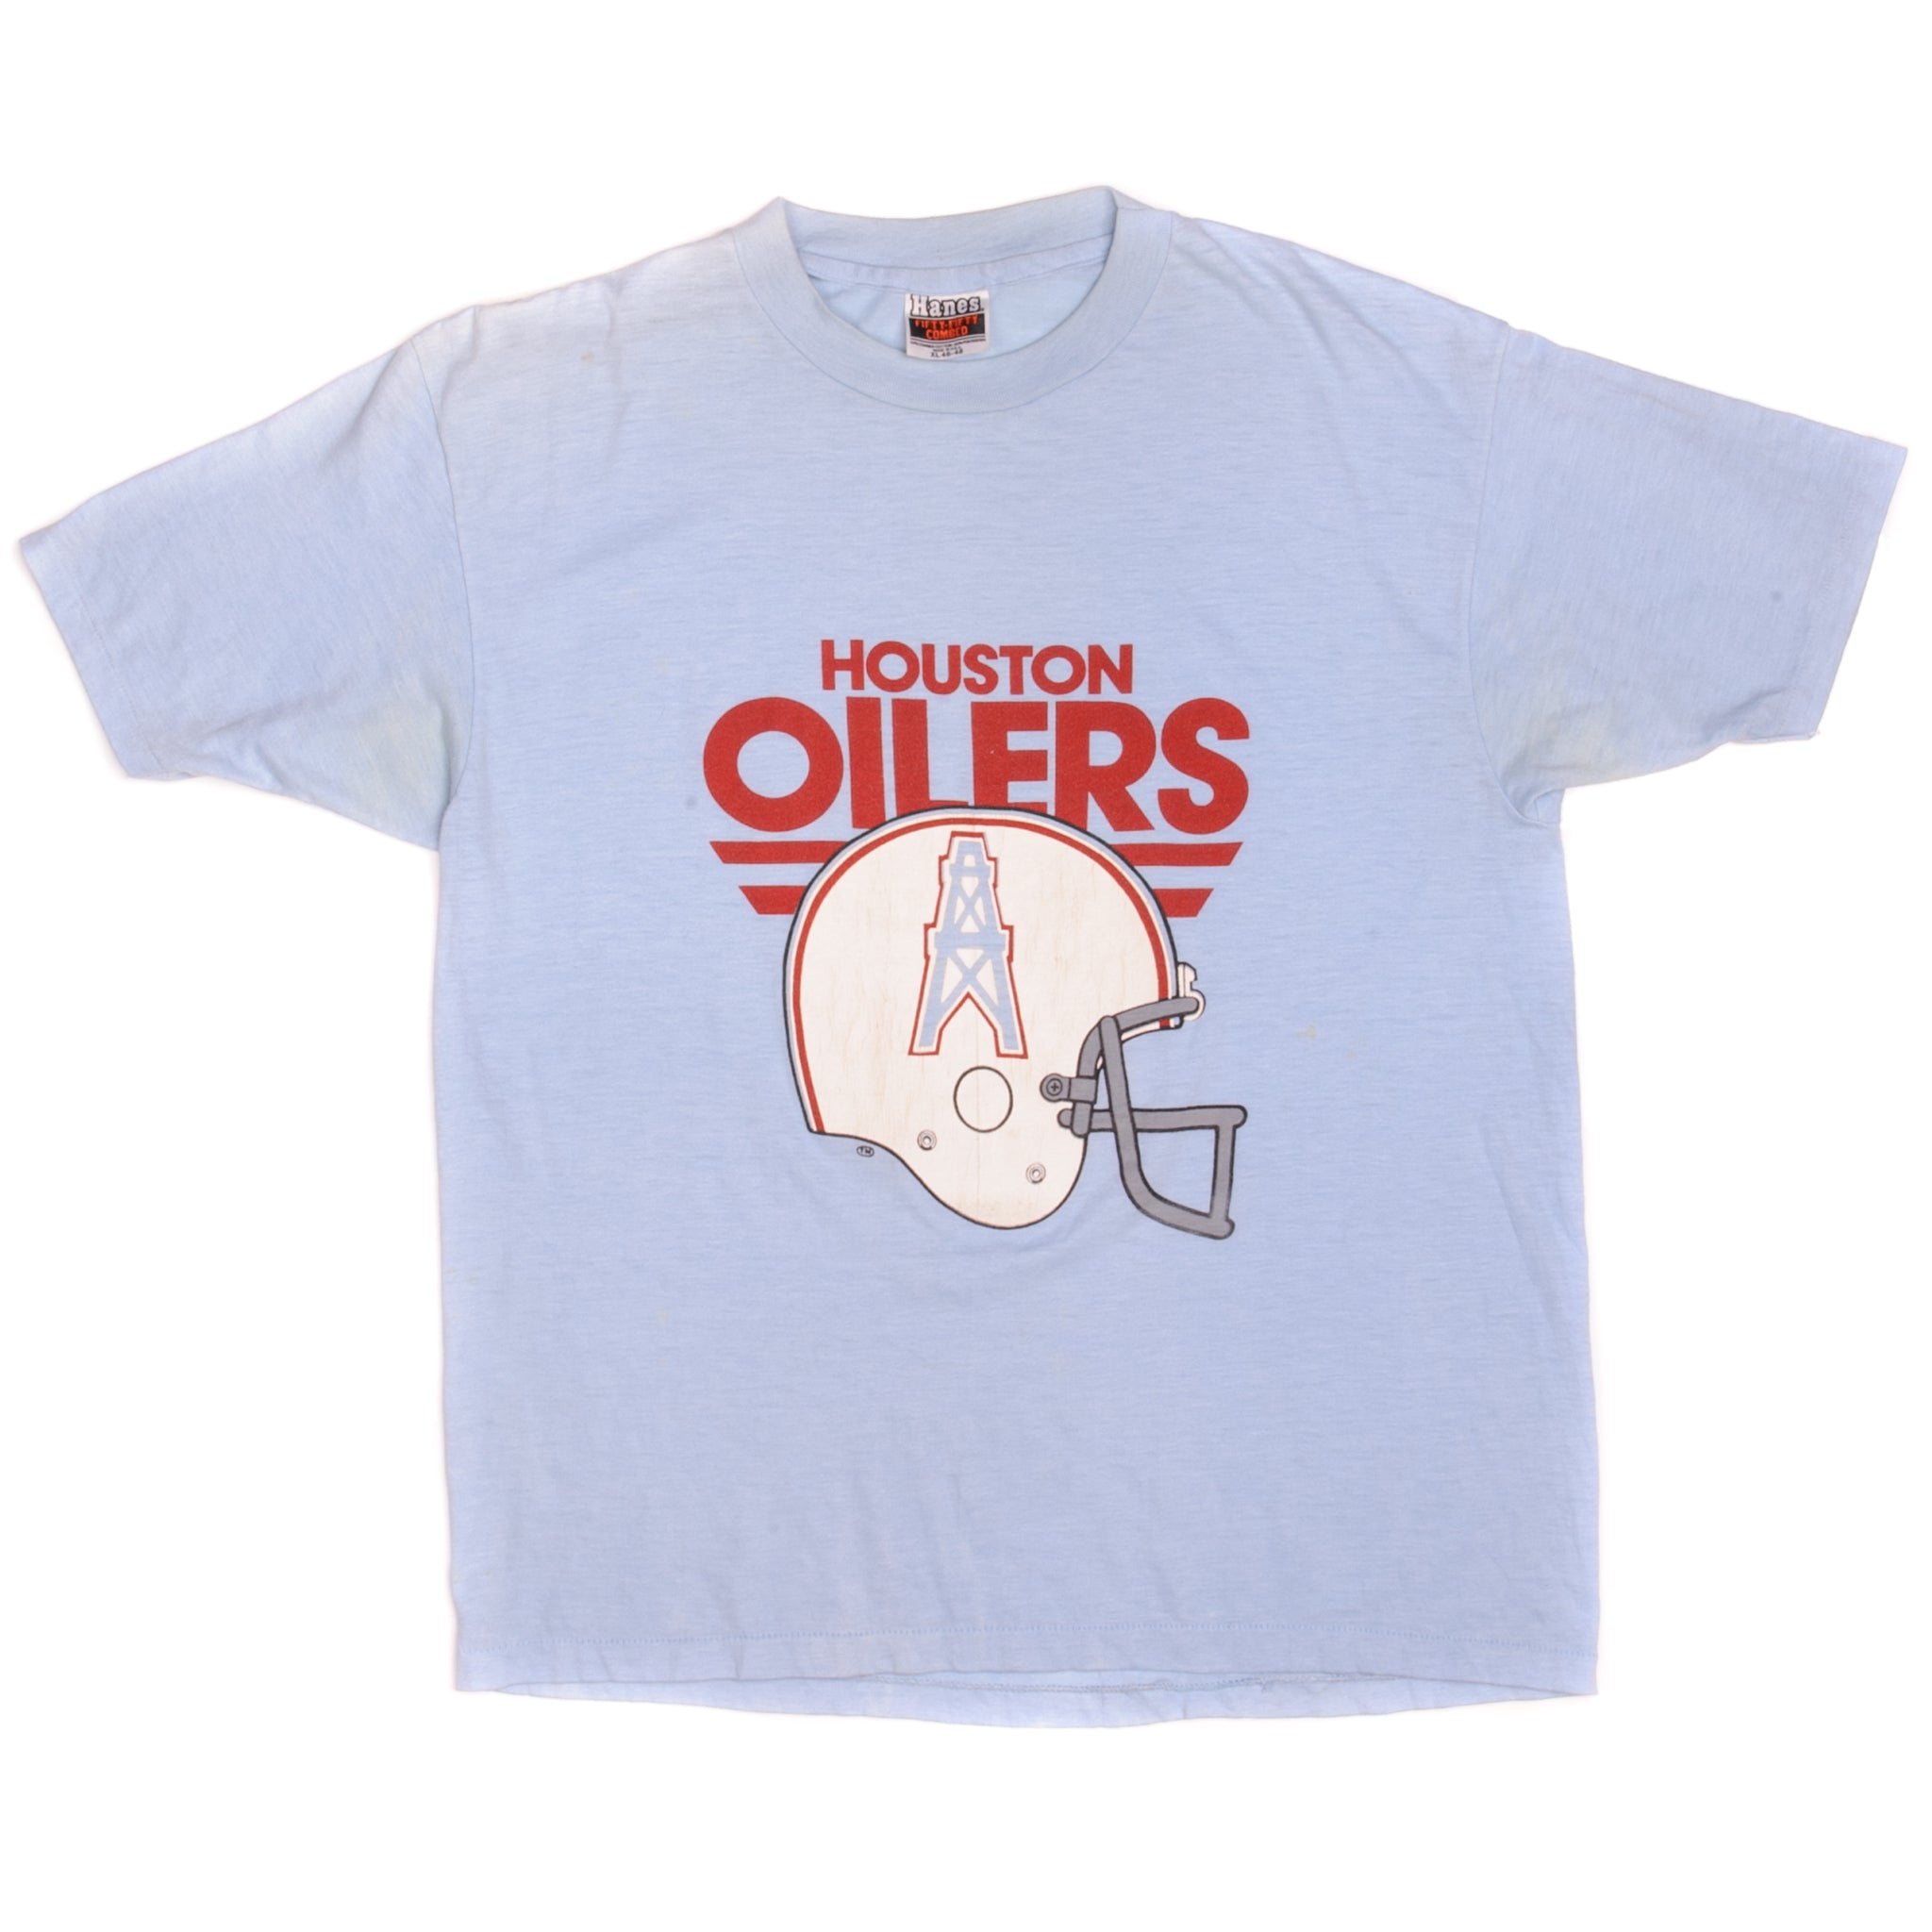 Buy the Vintage Magic Johnson Houston Oilers NFL T-shirt Size Unisex Large